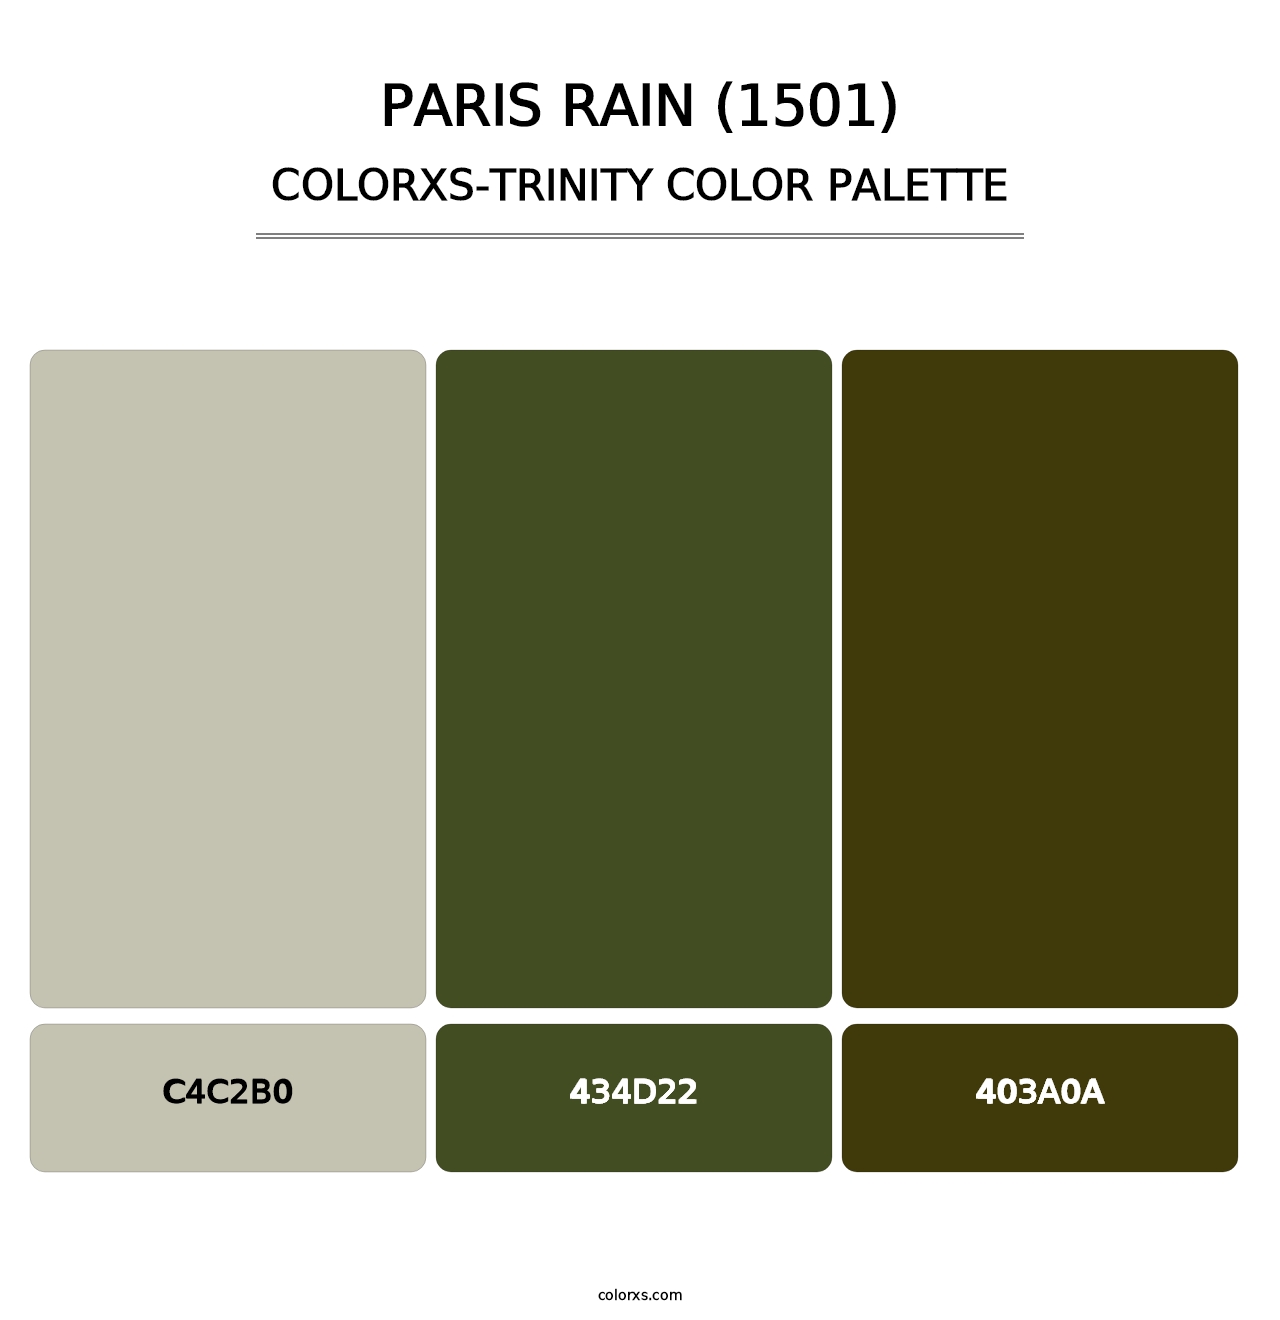 Paris Rain (1501) - Colorxs Trinity Palette